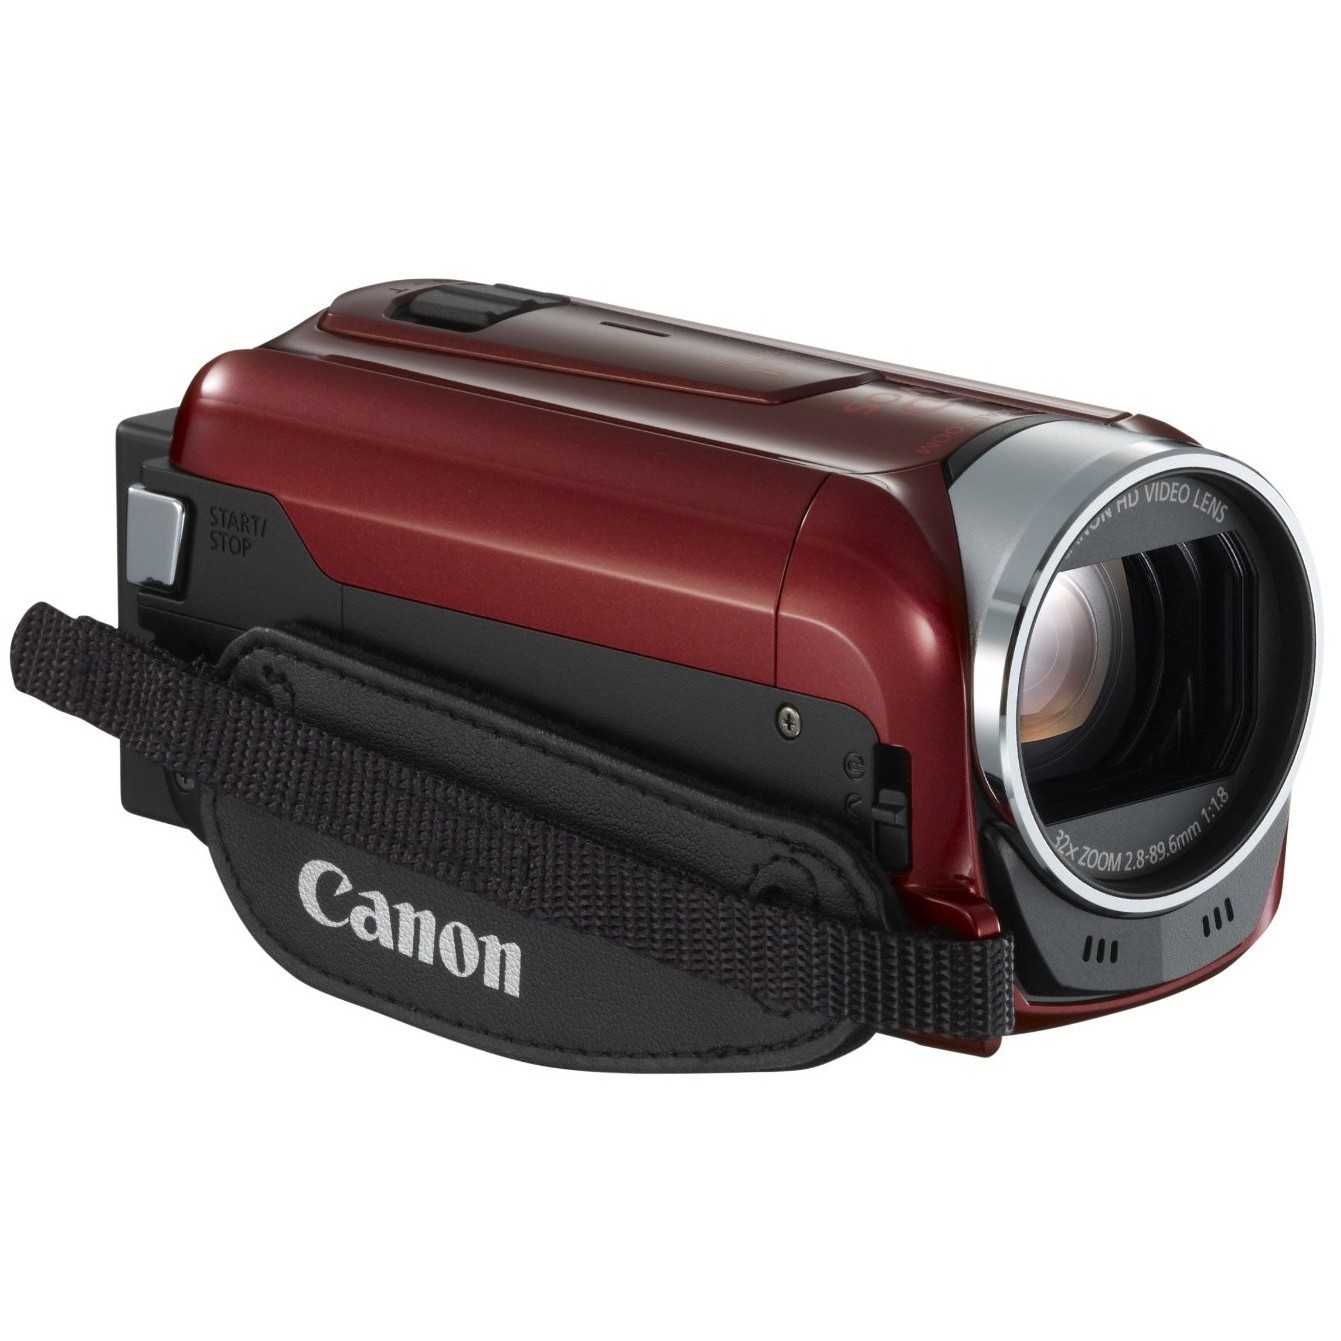 Canon legria hf r46 - купить , скидки, цена, отзывы, обзор, характеристики - видеокамеры